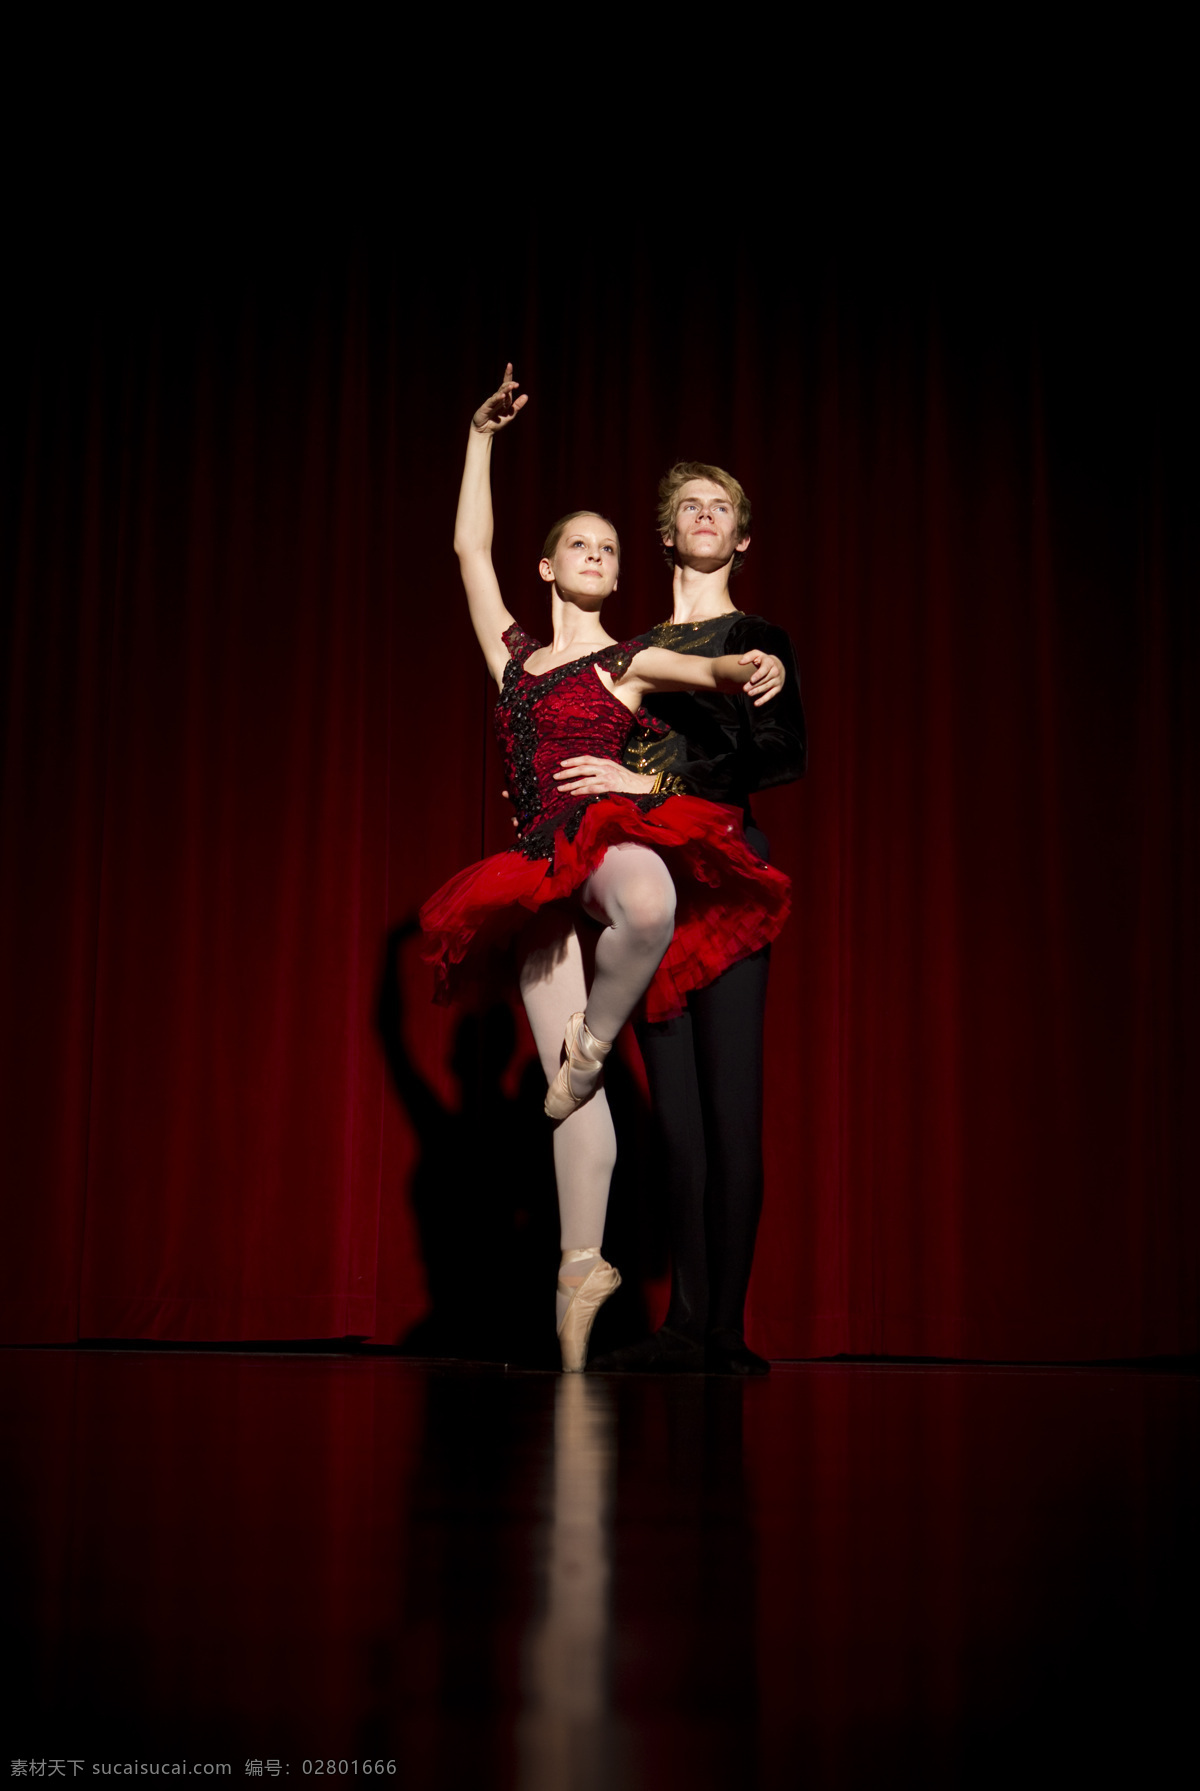 芭蕾 高清 国外 人物图库 特写 舞者 形象 照片 专业舞者 舞蹈家 职业人物 psd源文件